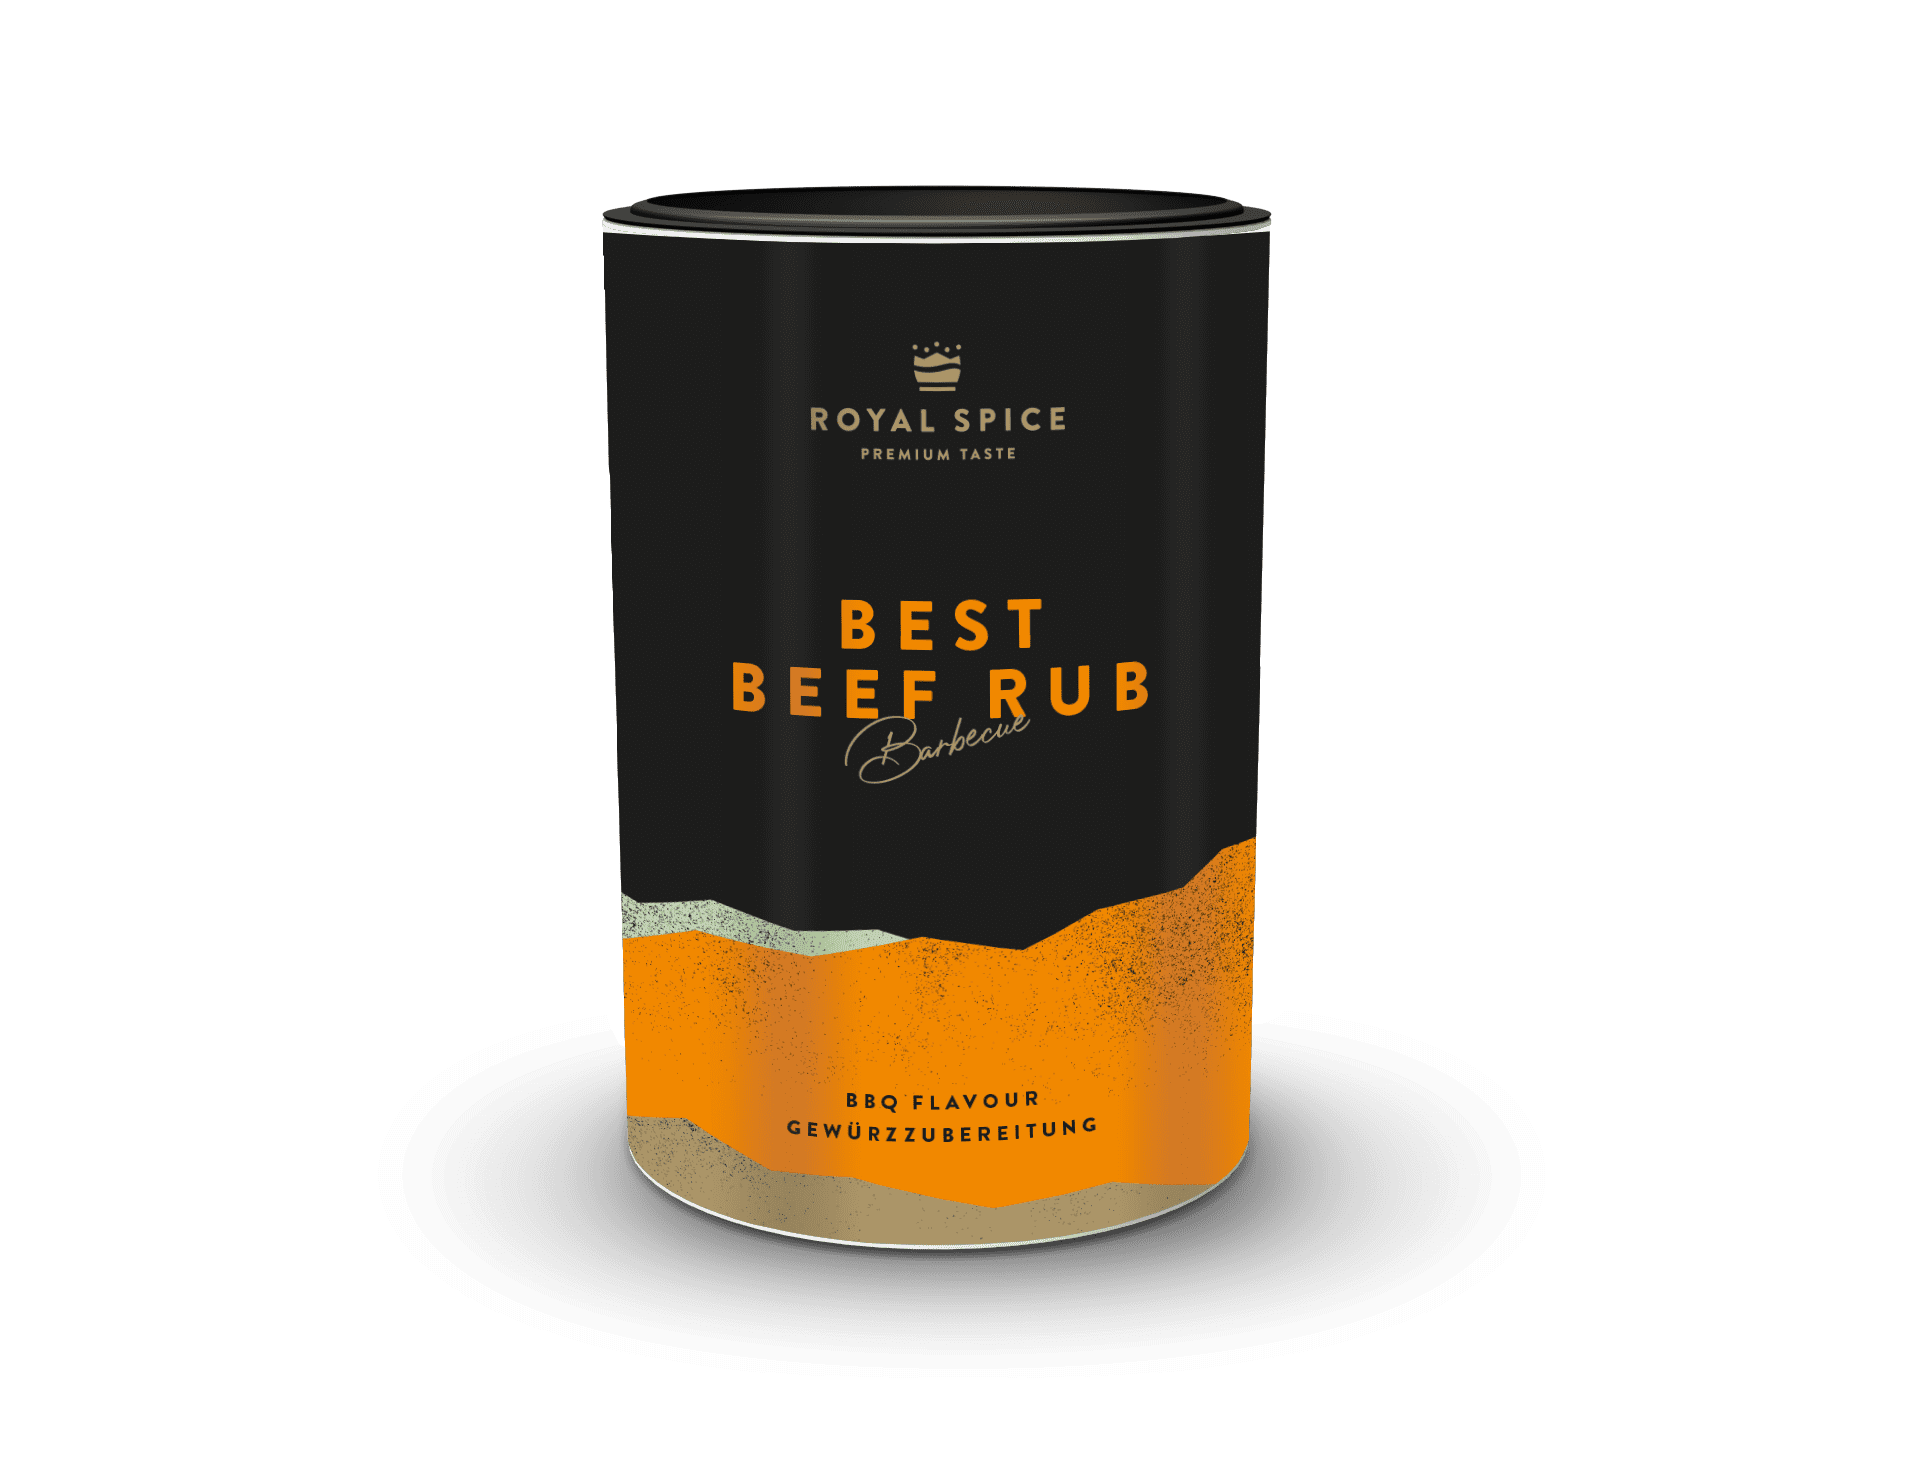 Best BBQ Beef Rub Gewürzzubereitung